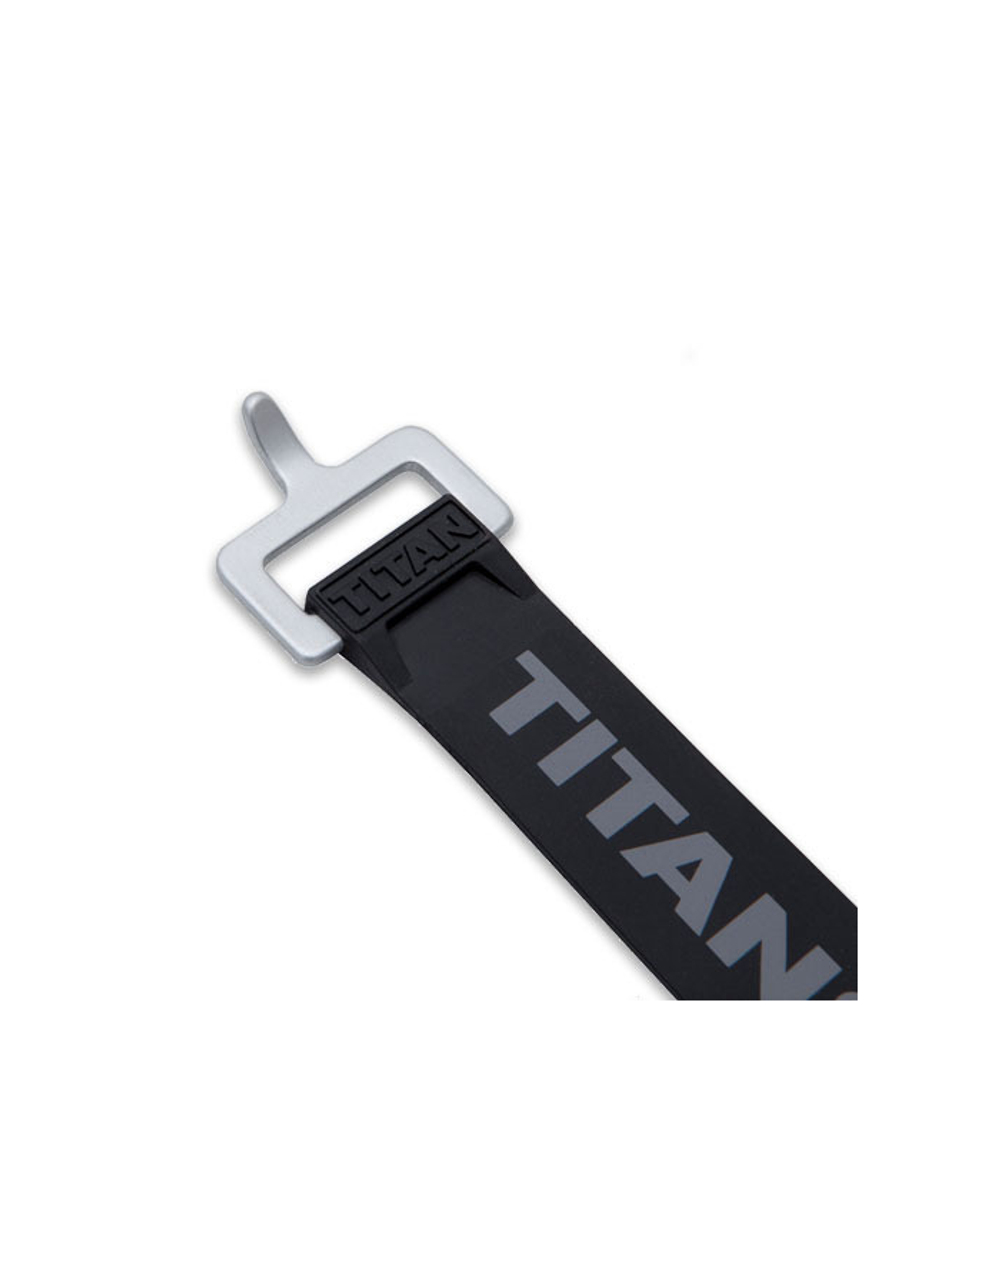 Ремень крепёжный TitanStraps Industrial черный L = 51 см (Dmax = 14,15 см, Dmin = 5,5 см)